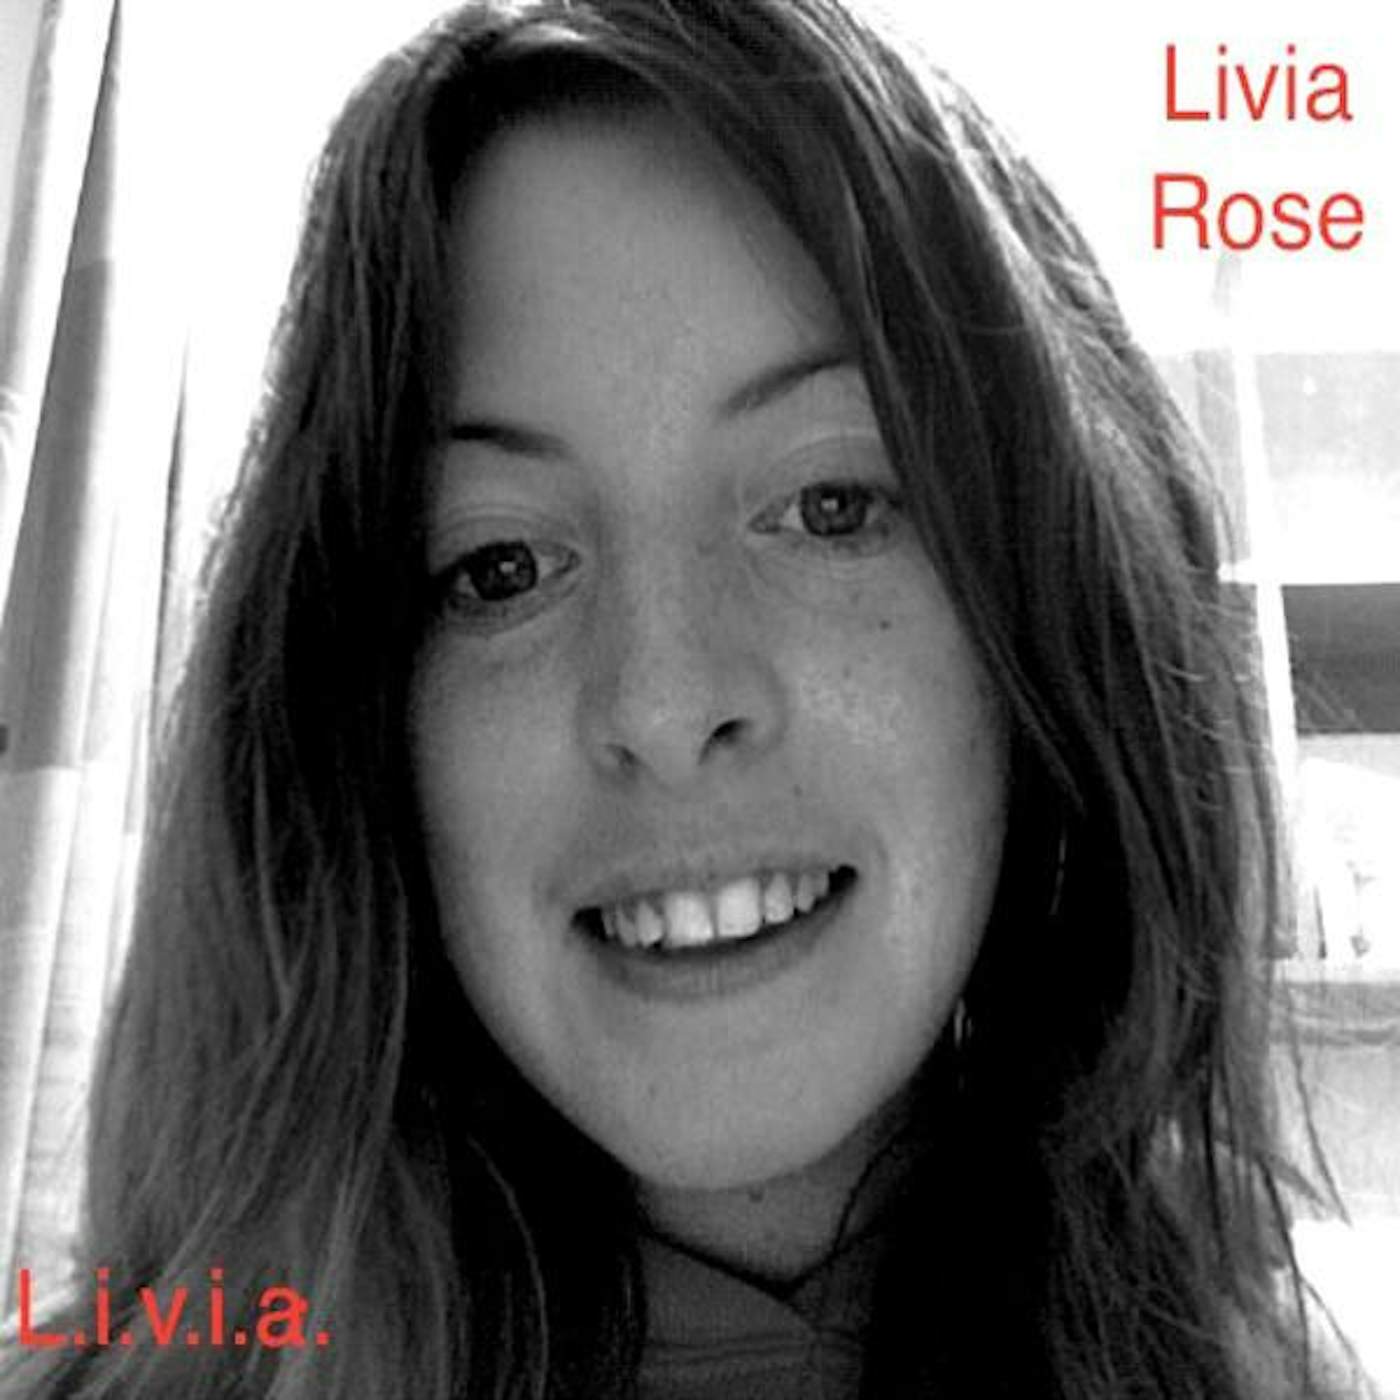 Livia Rose